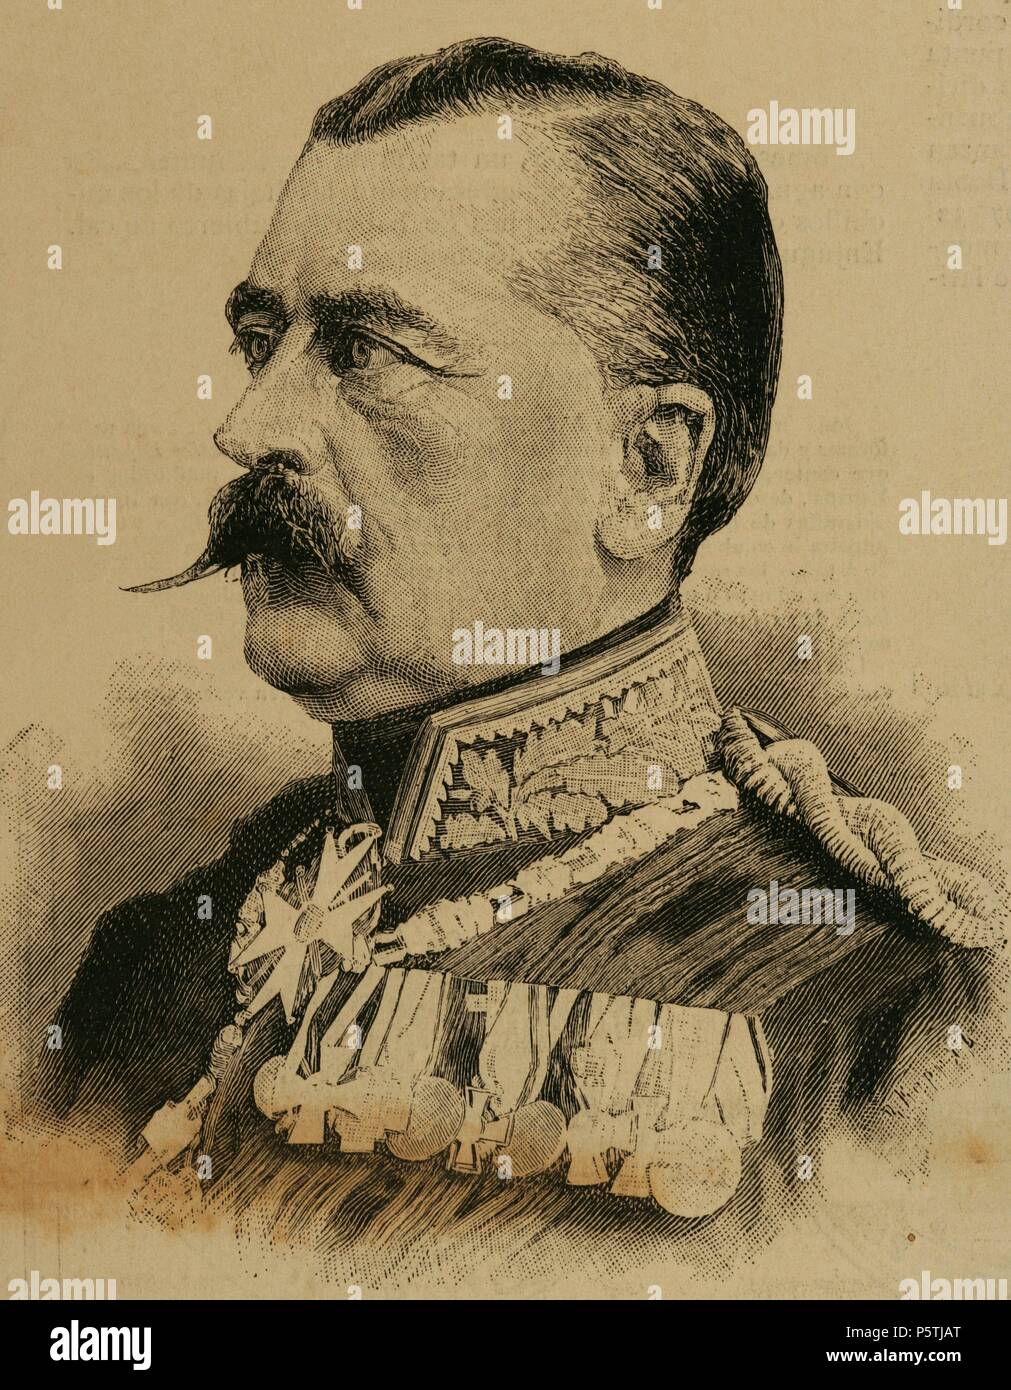 Le Prince Charles Antoine de Hohenzollern-Sigmaringen (1811-1885). A été chef de la Maison Princière de Hohenzollern-Sigmaringen, de Hohenzollern 1869 et premier ministre de Prusse. La gravure. L'illustration espagnole et américaine. 1885. Banque D'Images